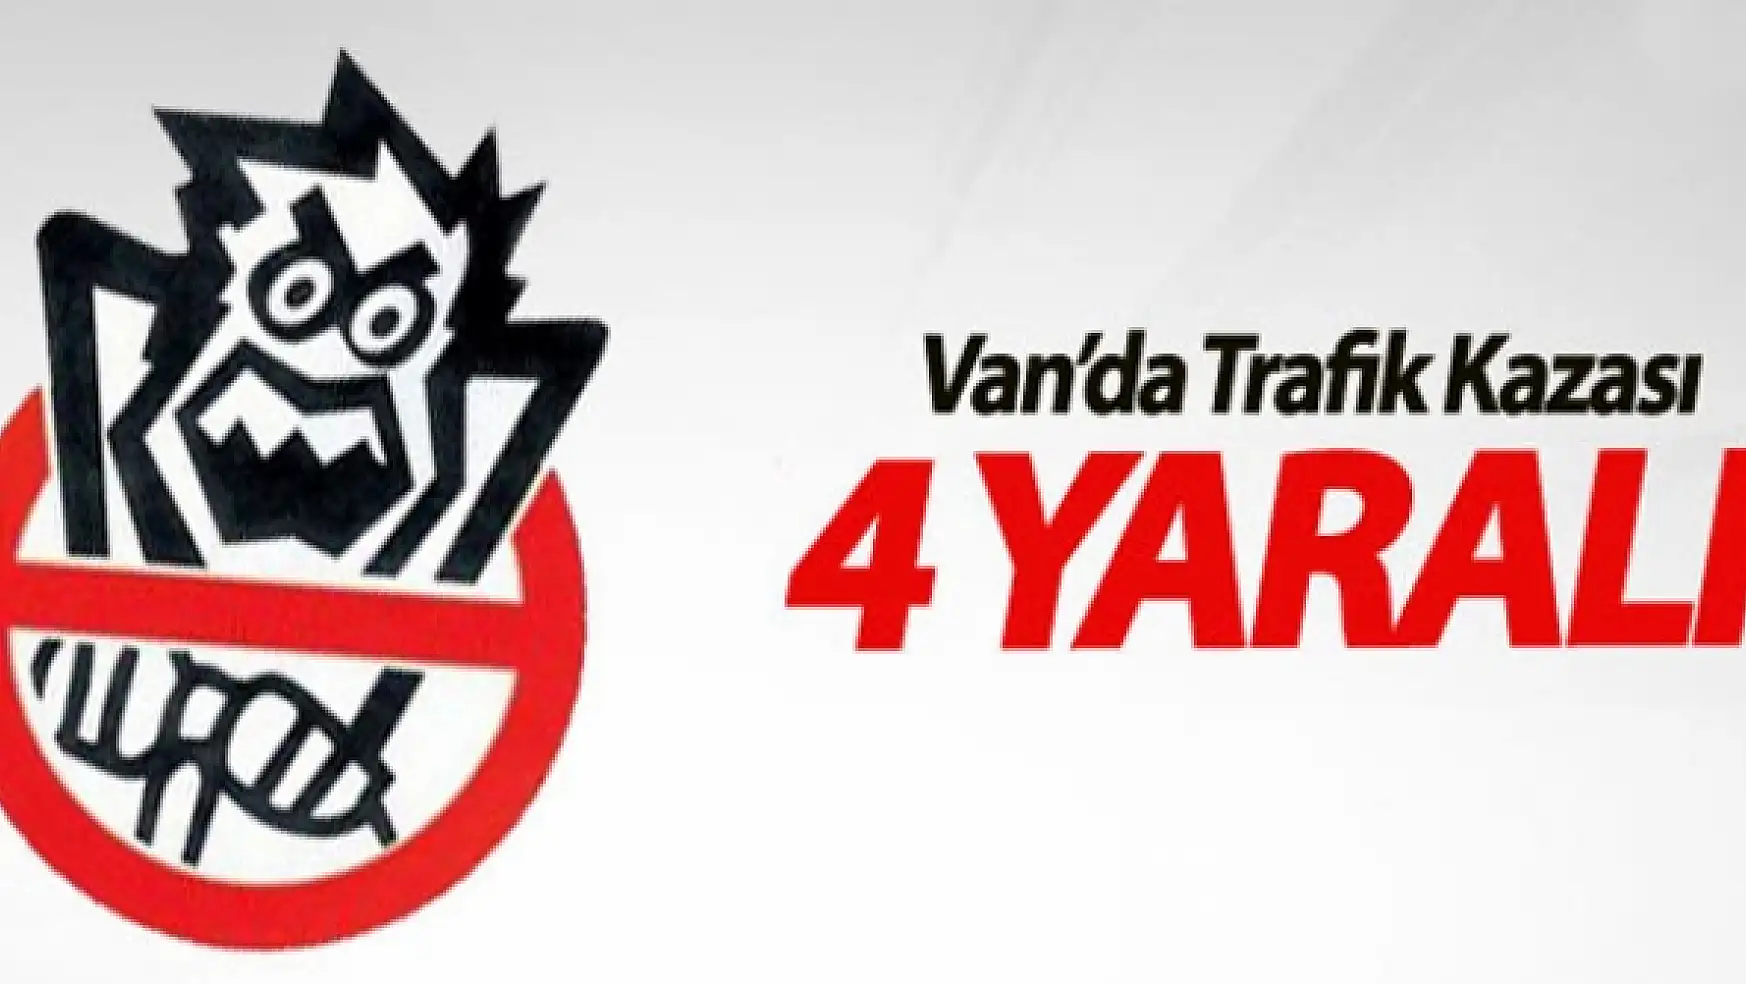 Van'da Trafik Kazası: 4 Yaralı